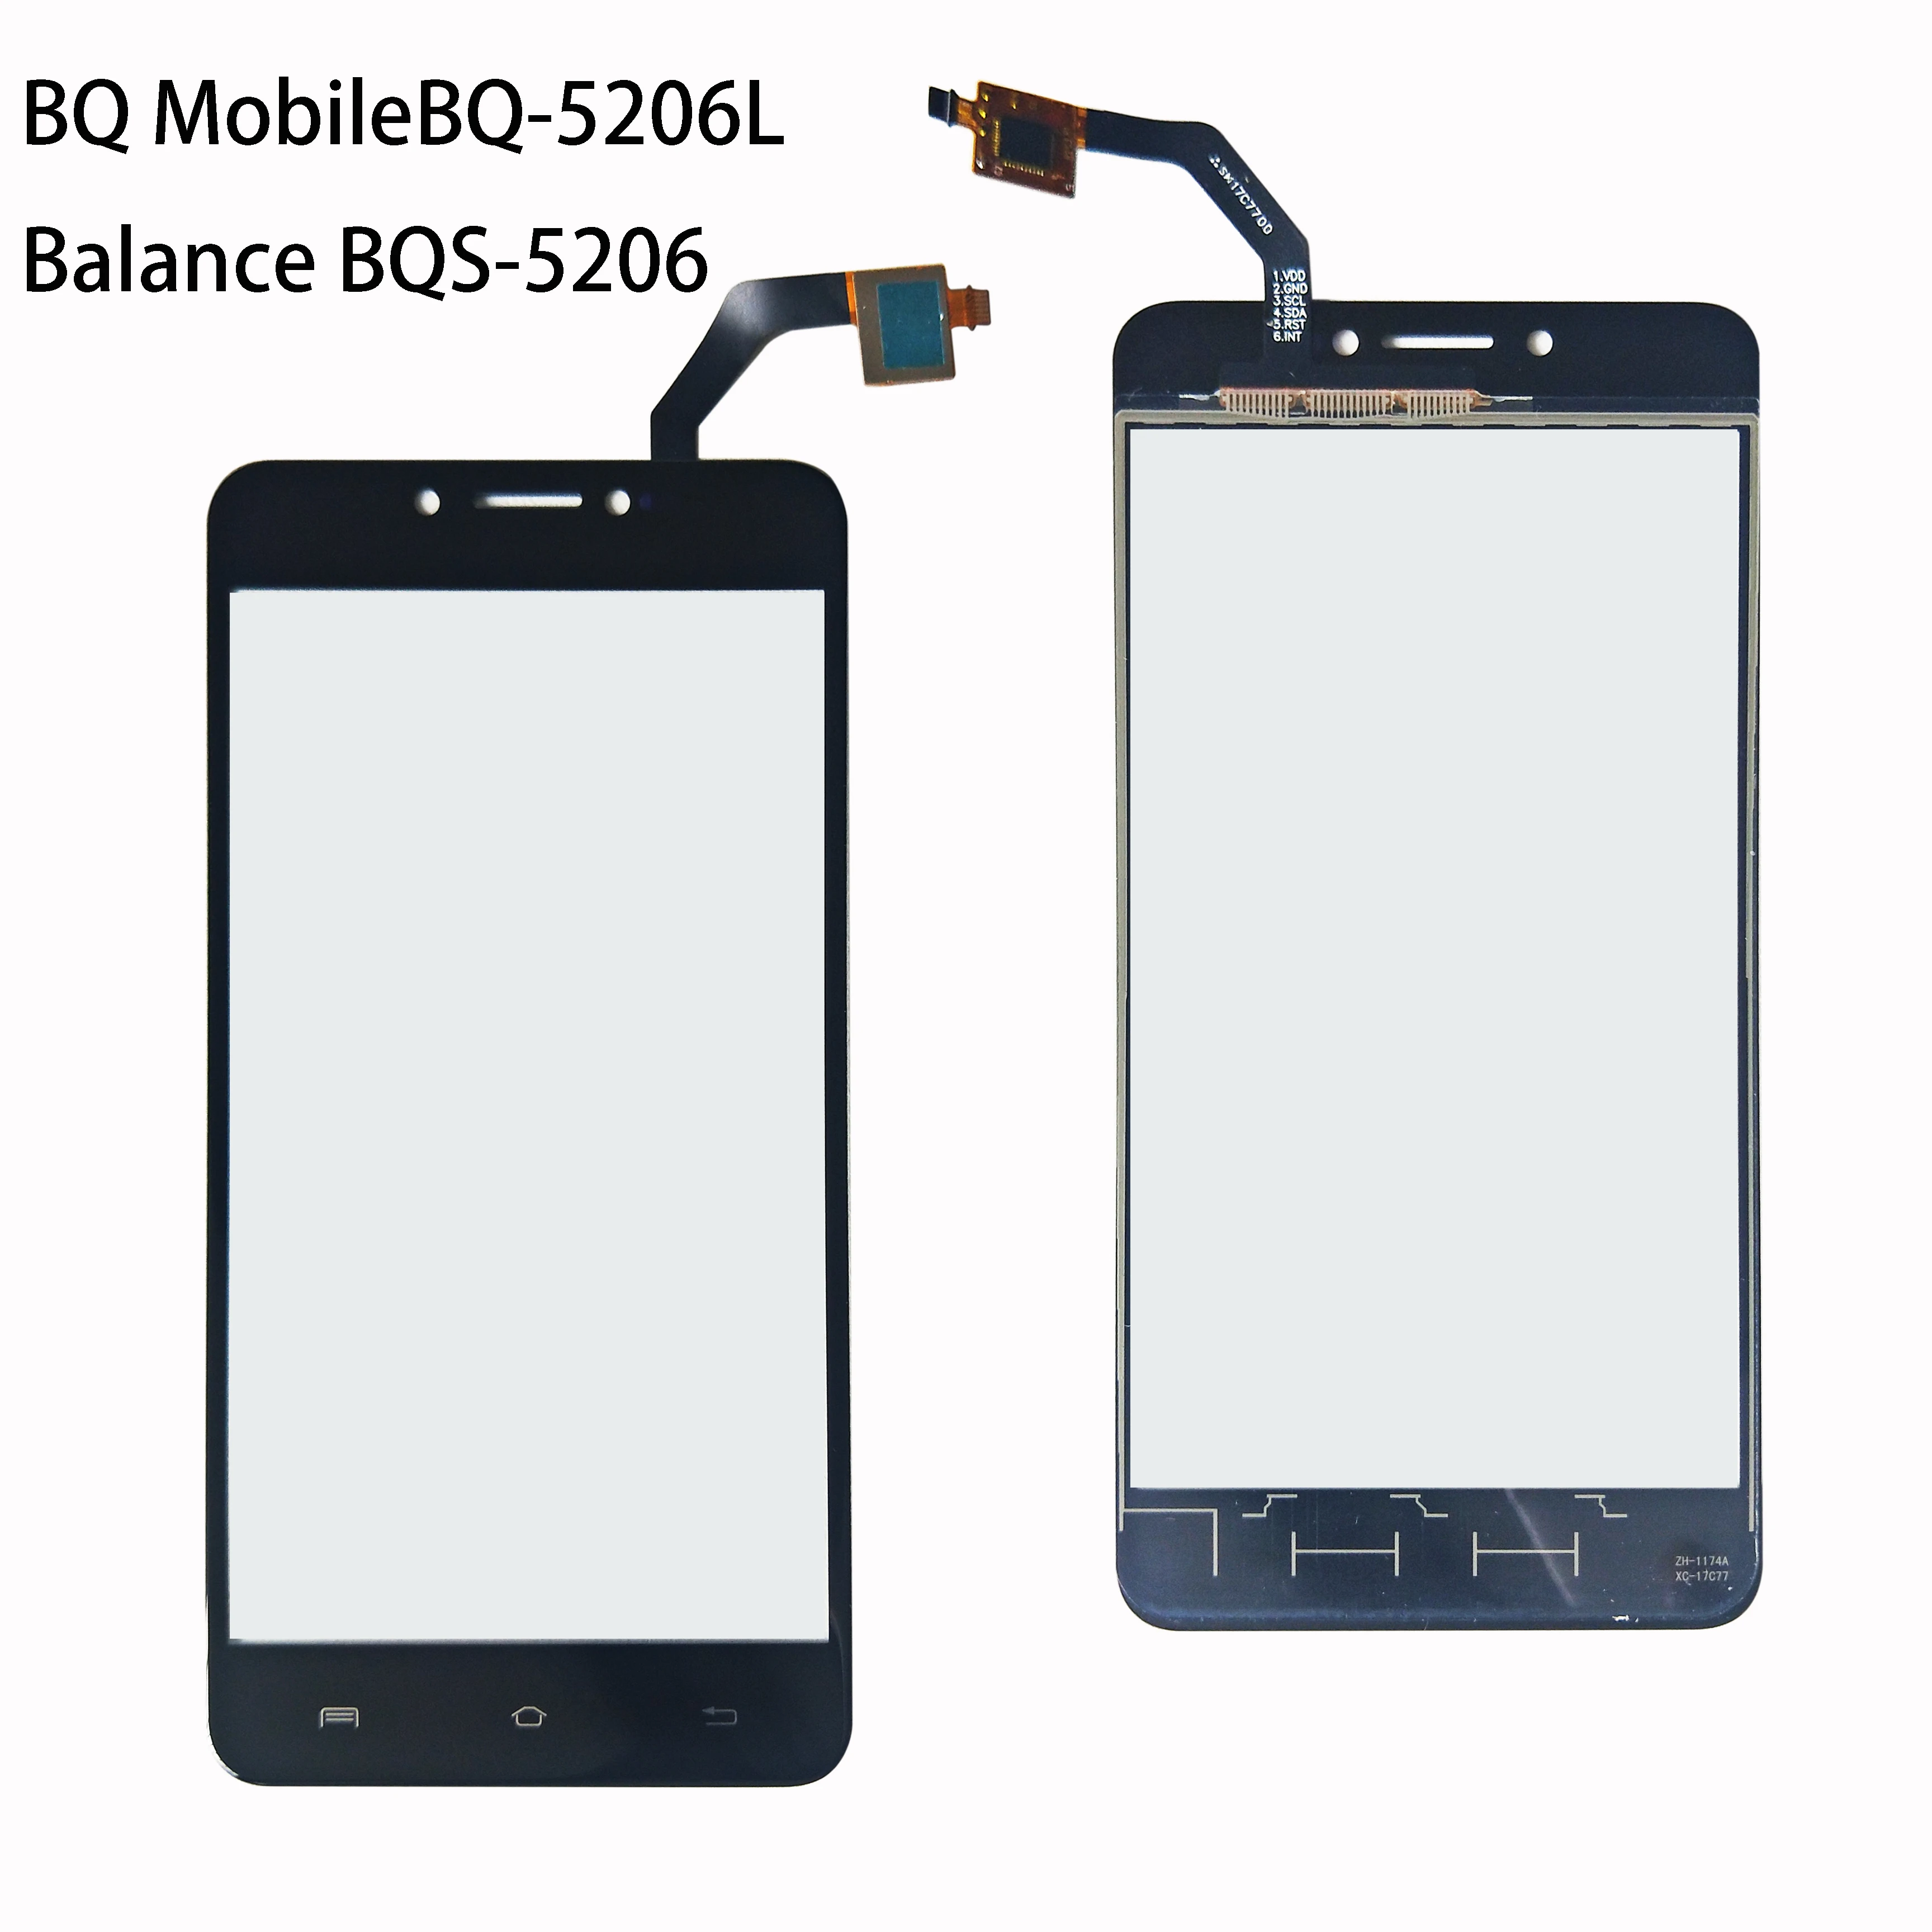 5,2 дюймов для BQ мобильного BQ-5206L BQS-5206 BQ 5206L баланс сенсорный экран стекло Сенсорная панель объектив стекло дигитайзер